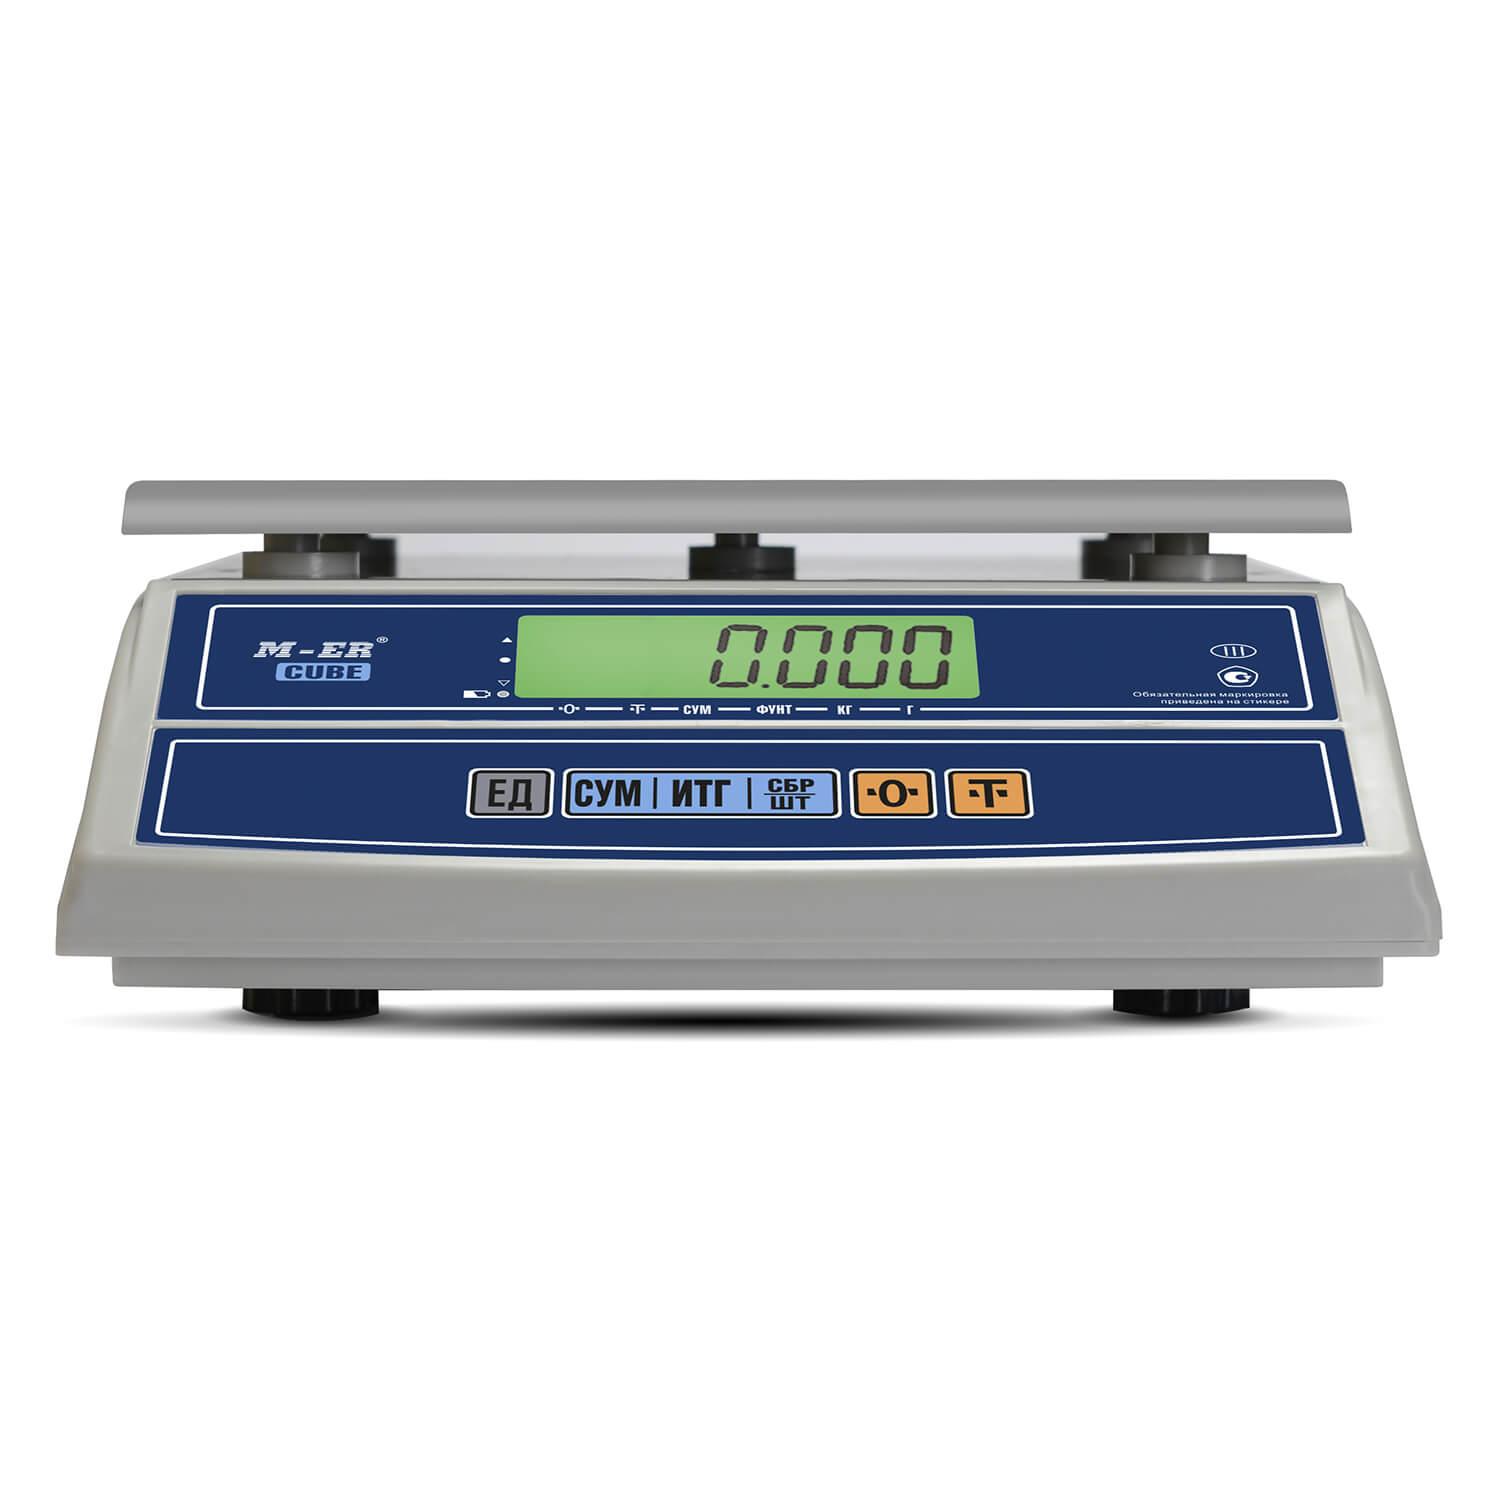 Фасовочные настольные весы M-ER 326 AFL-32.5 "Cube" c RS-232 LCD (3144)